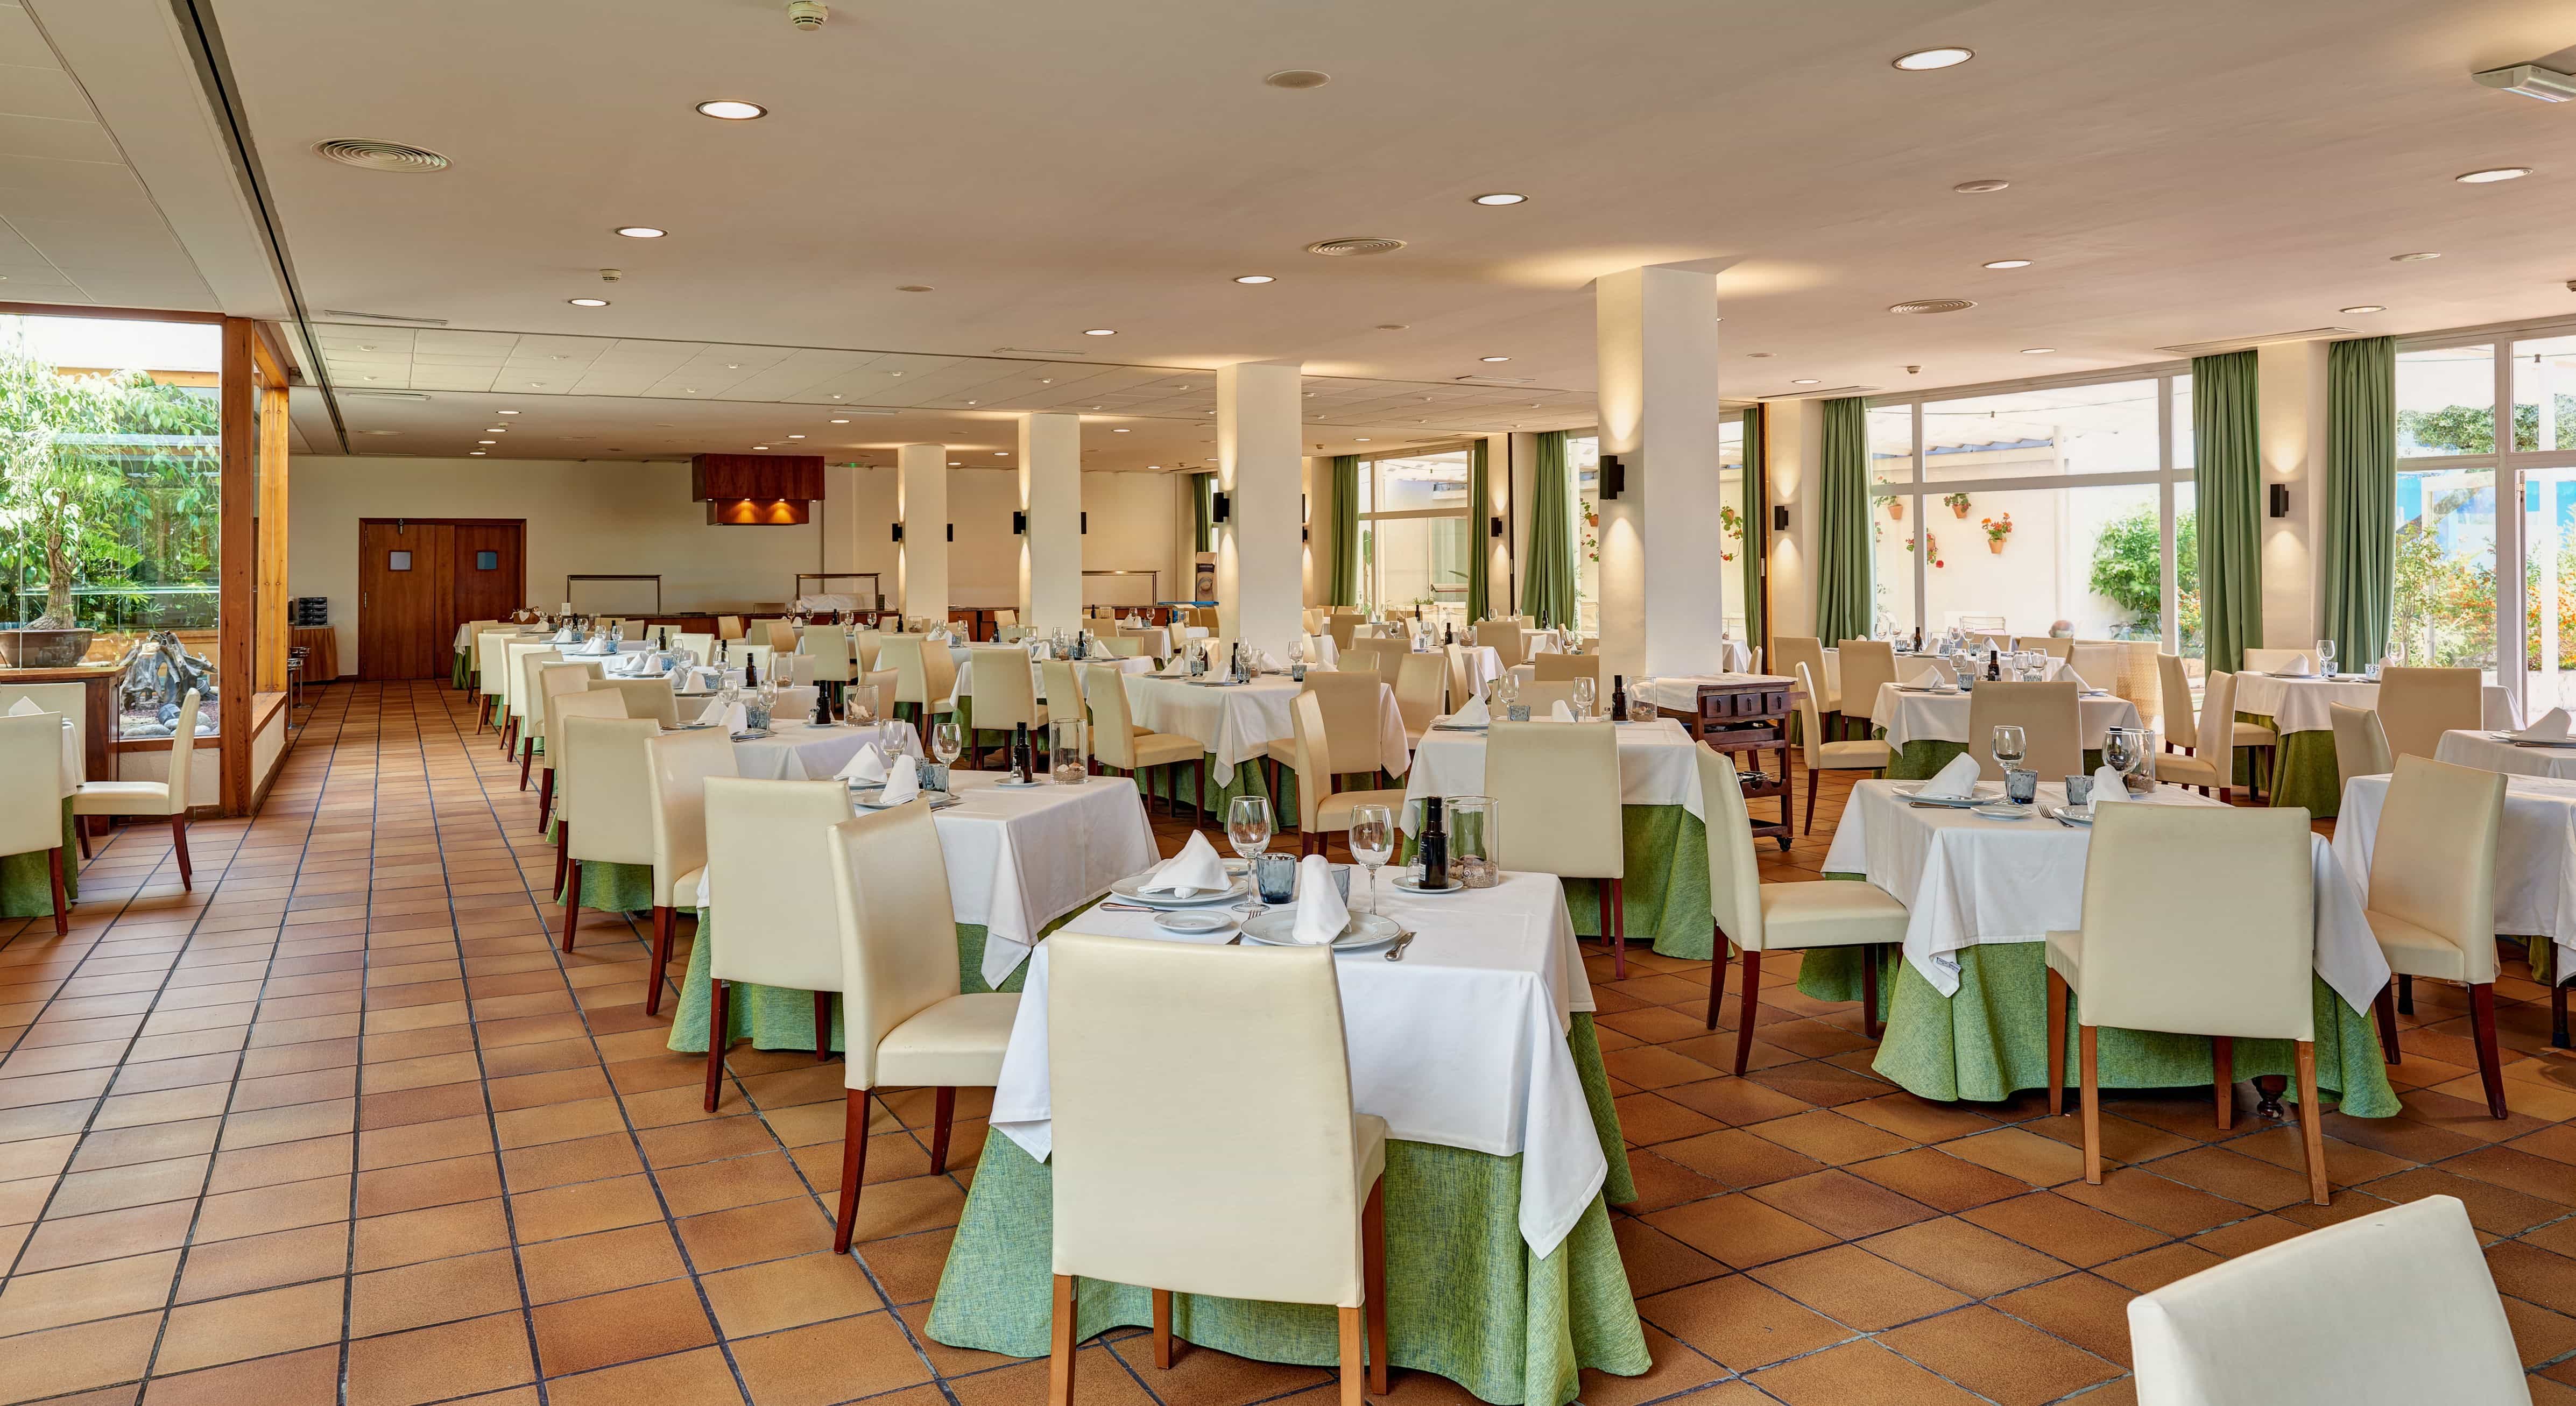 Comedor interior amplio con mesas preparadas del Restaurante del Parador de Benicarló